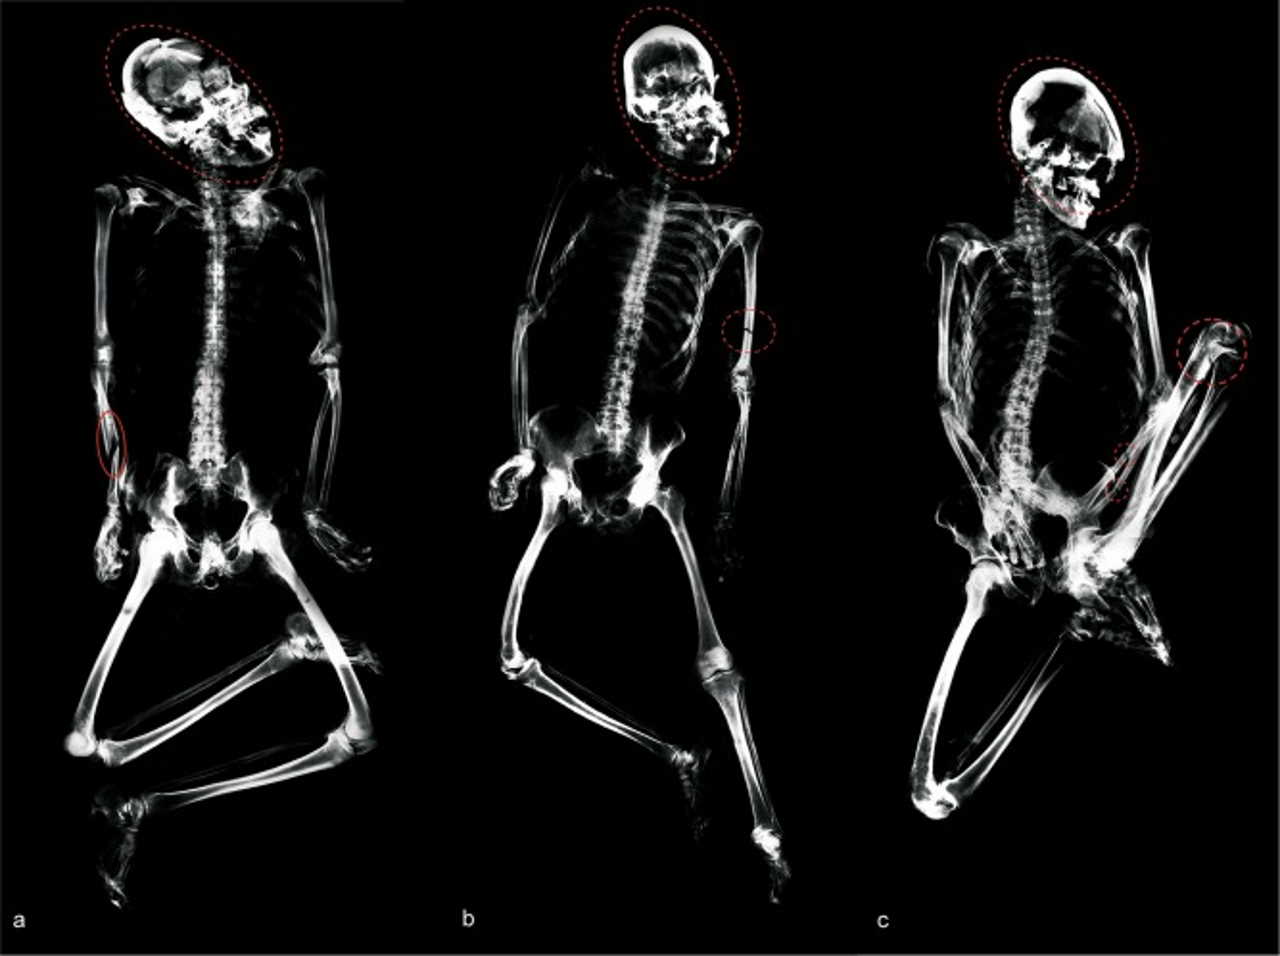 Рештки трьох осіб зі смертельними пораненнями черепа, знайдені у спільному похованні. Standen et al. / Journal of Anthropological Archaeology, 2021